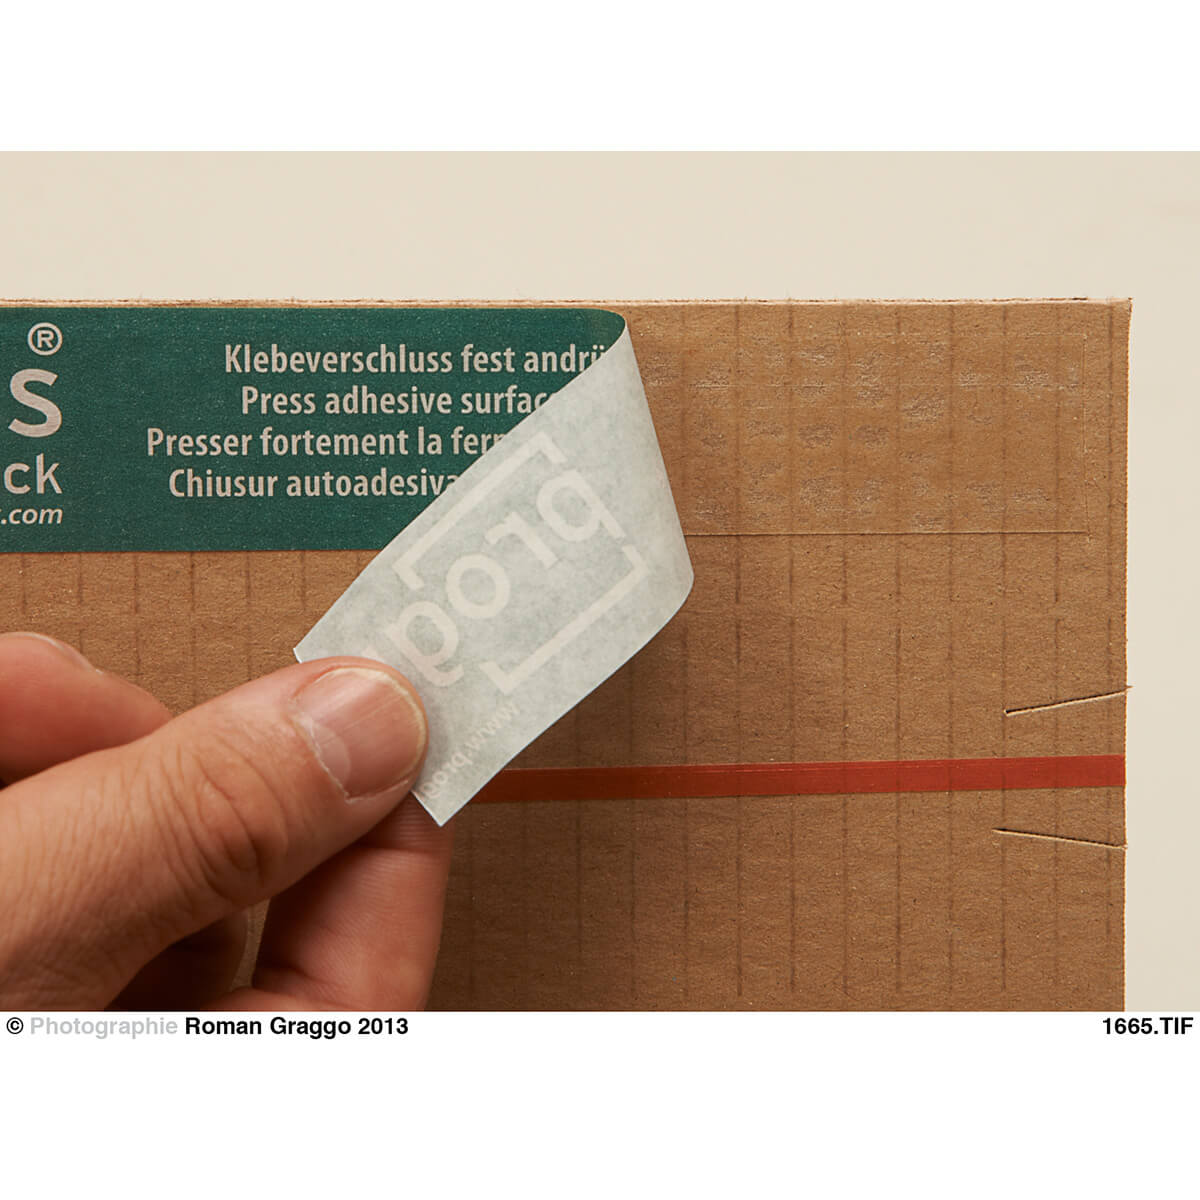 Buchverpackung 230x165x70-0 mm Pappe 2 wellig DIN A5 selbstklebend + Aufreißfaden - progressPACK